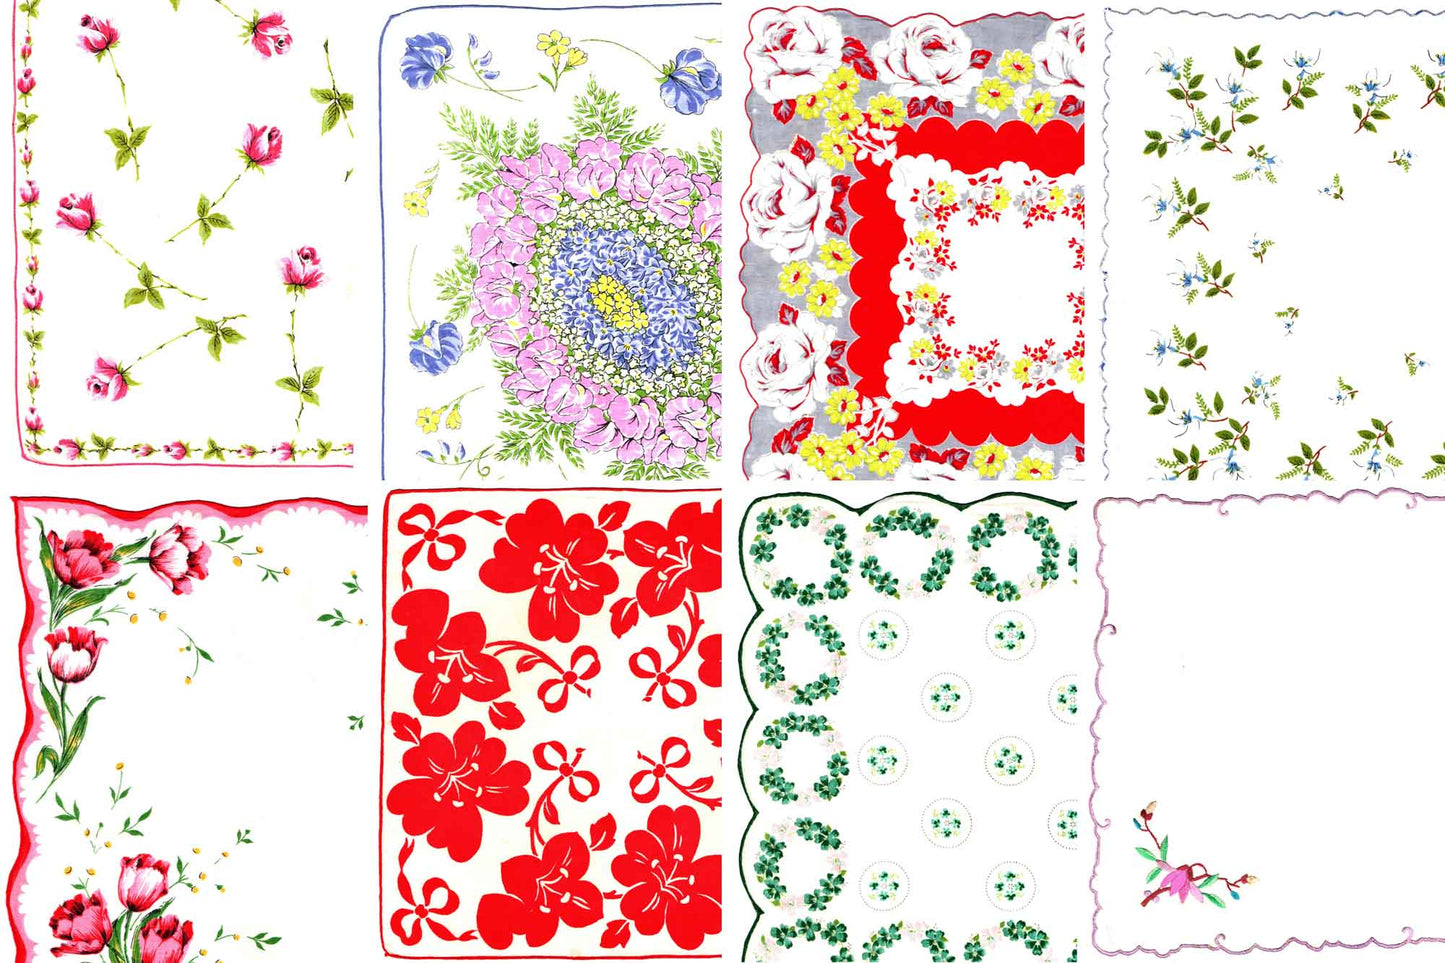 Vintage Floral Hankies - Printable Ephemera Set #67 - 18 Page Instant Download - junk journal kit, ladies hanky, slow stitch